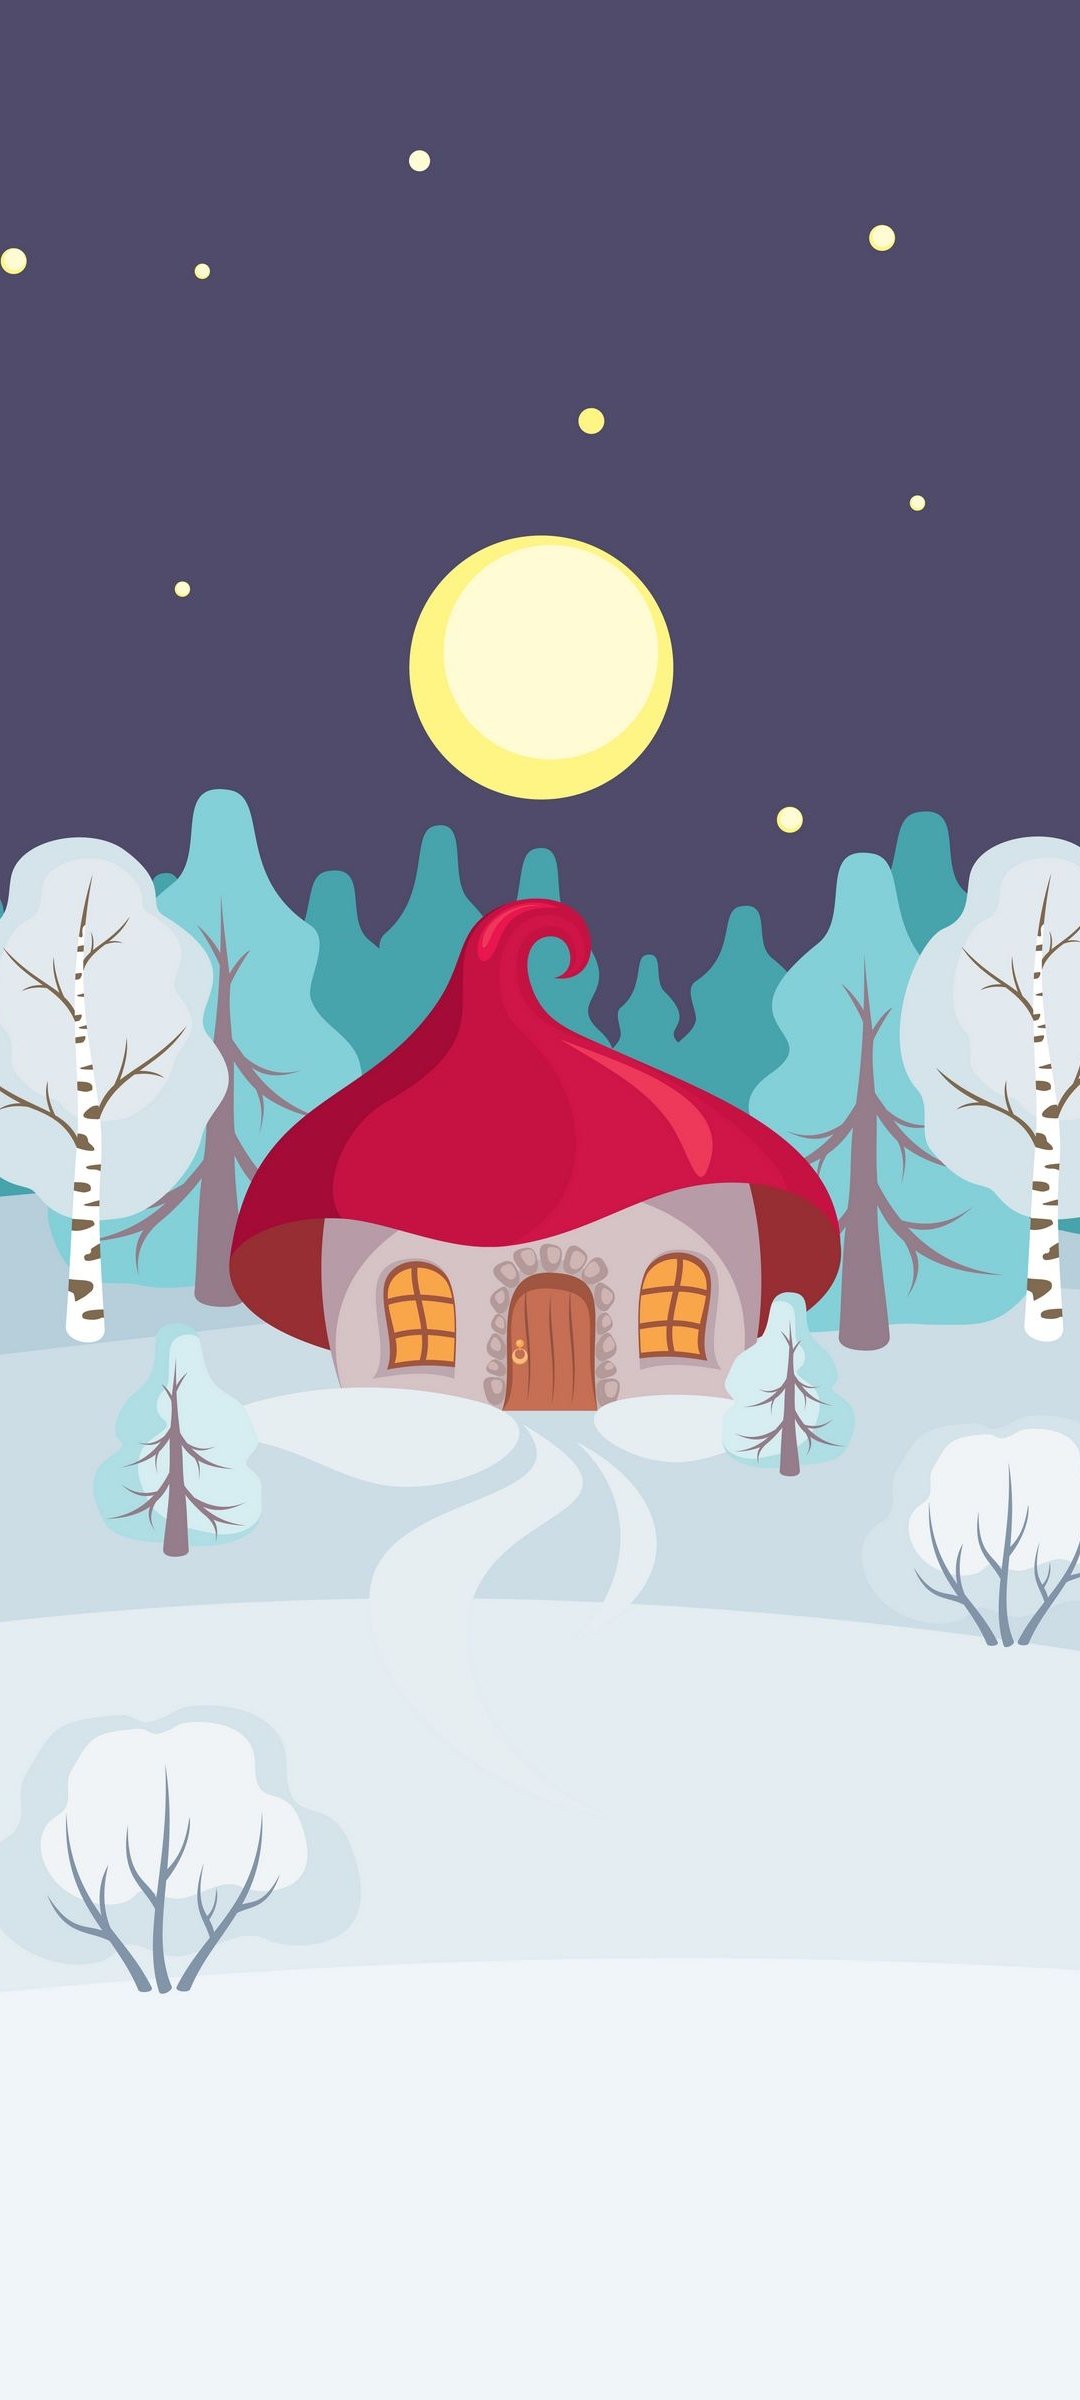 月と赤い屋根の家と雪の大地のイラスト Aquos Sense4 Plus 壁紙 待ち受け スマラン